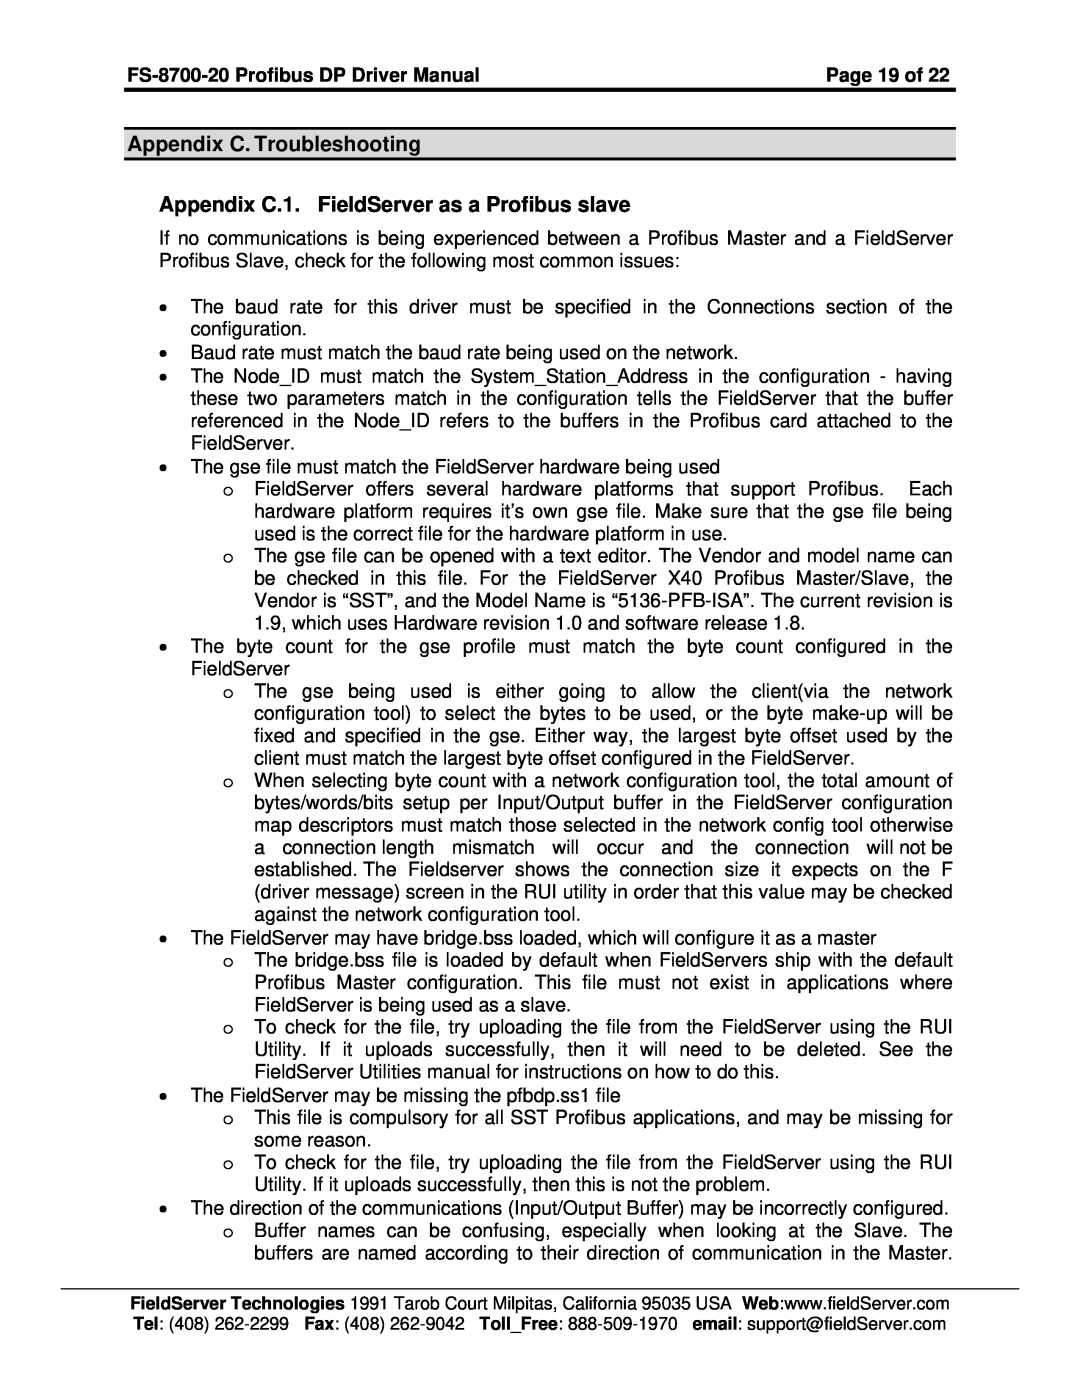 FieldServer FS-8700-20 instruction manual Appendix C. Troubleshooting, Appendix C.1. FieldServer as a Profibus slave 